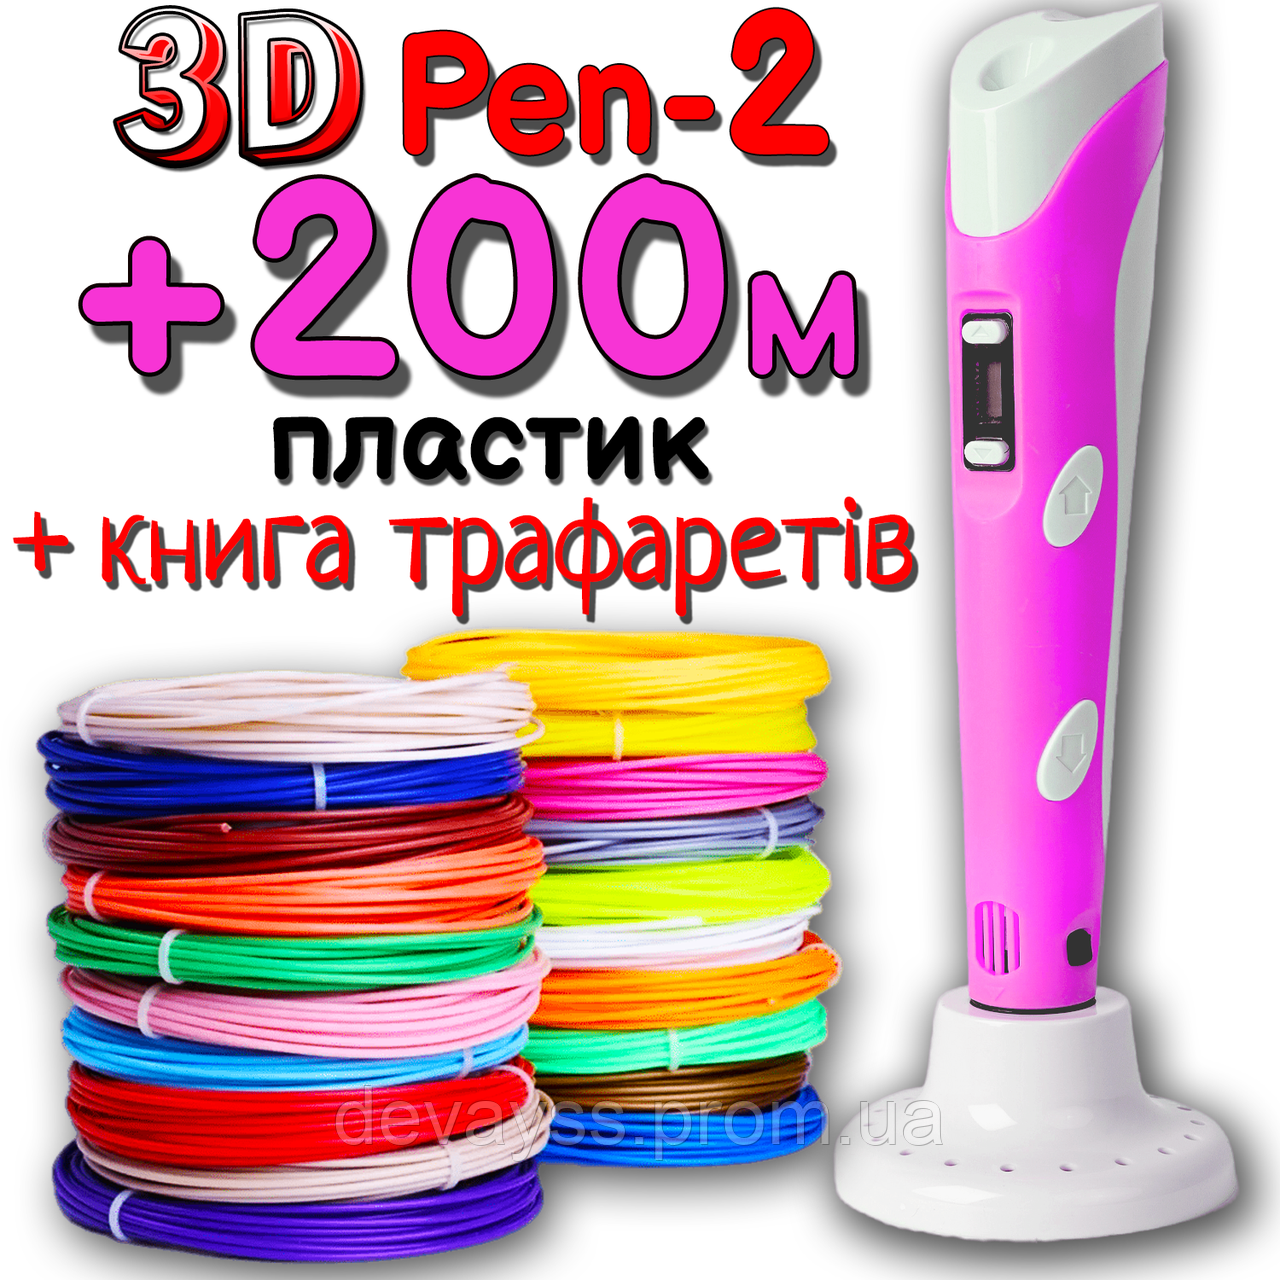 200 метрів пластику та трафарети в подарунок! 3D Ручка PEN-2 із LCD-дисплеєм Рожева для малювання! 3Д ручка